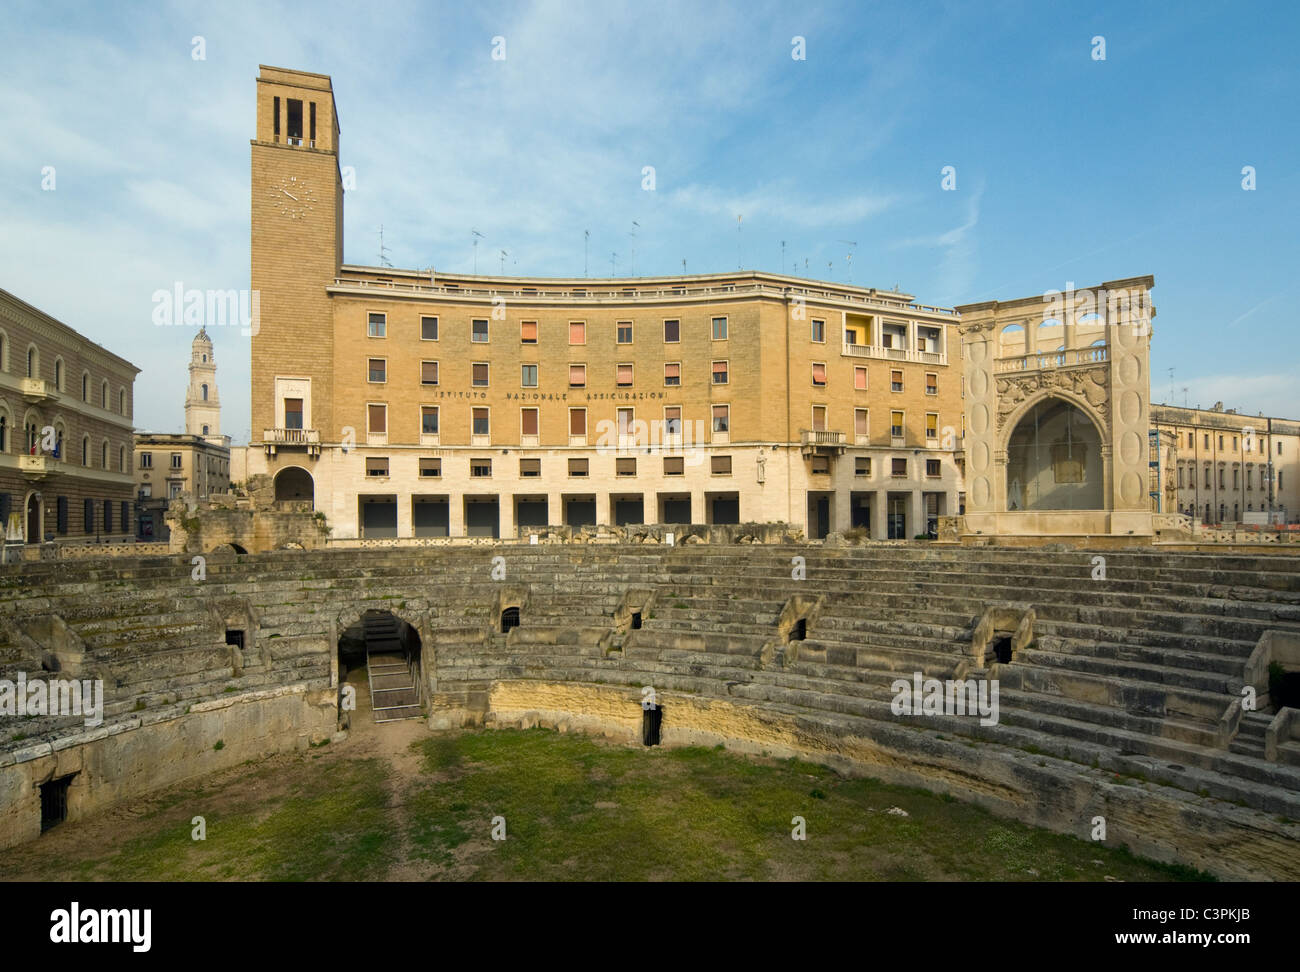 Roman Amphitheatre and INA Building (Italian Rationalist-Fascist Architecture), Sant'Oronzo Square, Lecce, Apulia, Italy Stock Photo